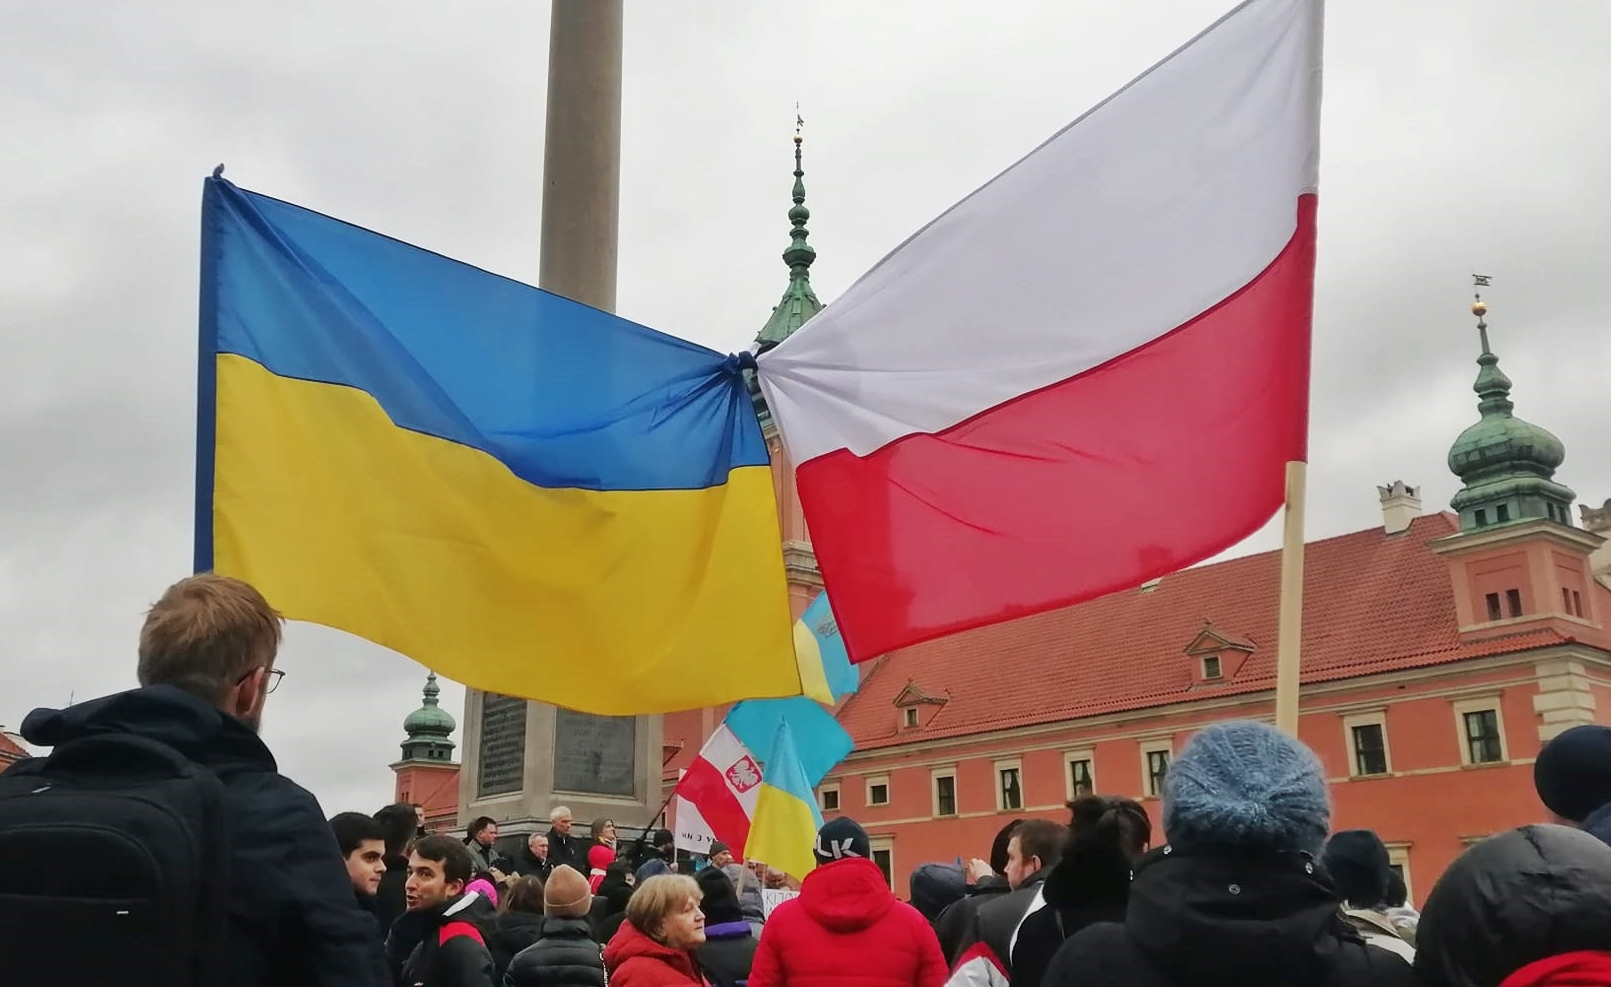 “Поляки та українці: як укласти спільне життя”: презентація дослідження та дискусія